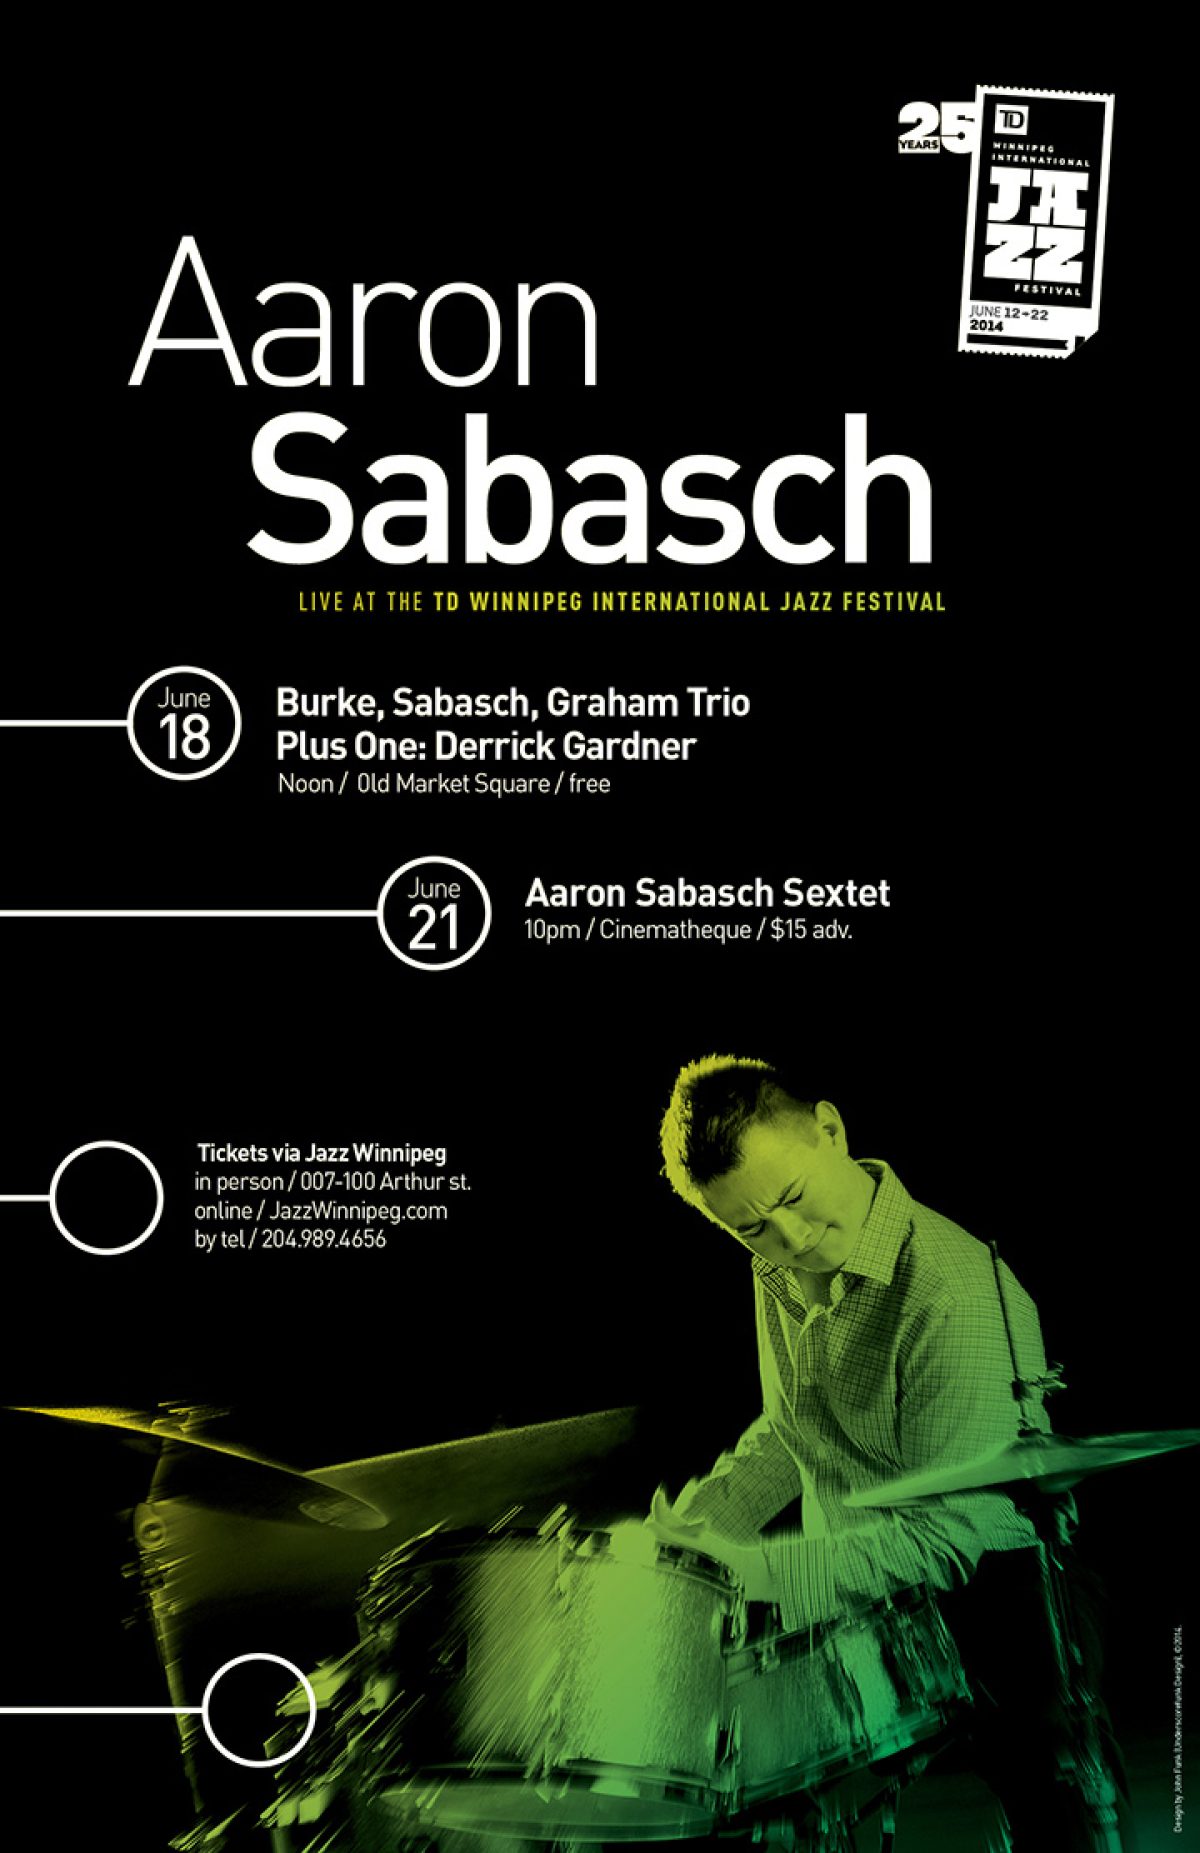 ASA_001_AaronSabasch_WpgJazzFest2014_web_poster_2